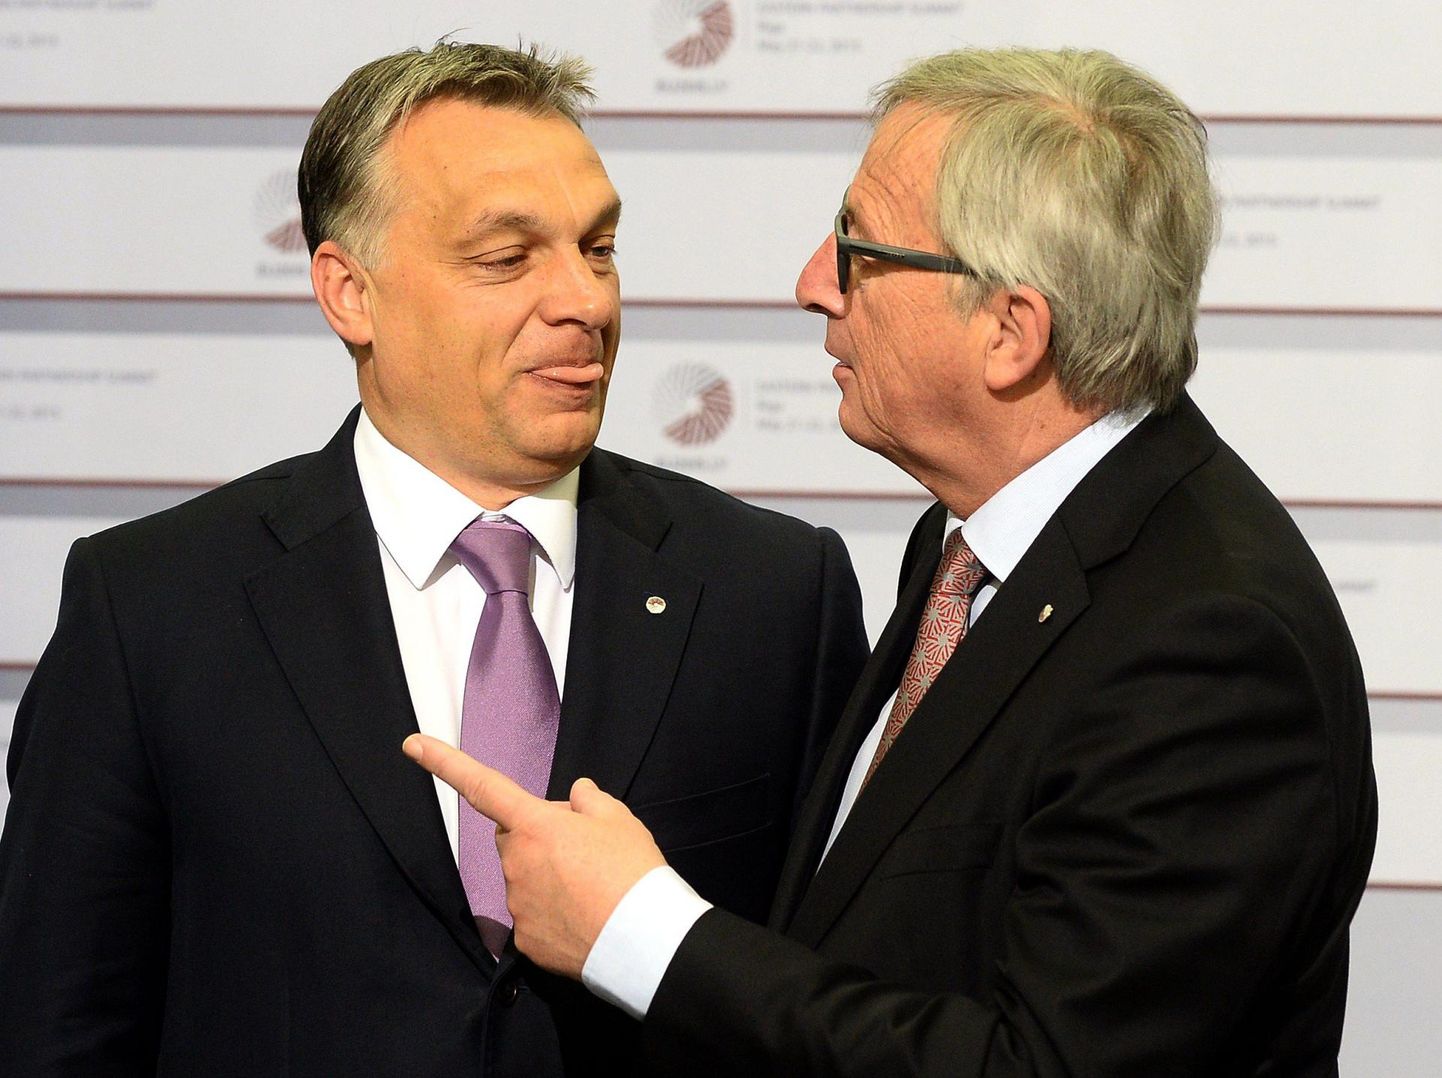 Viktor Orbán ja Jean-Claude Juncker 2015. aastal Riias idapartnerluse tippkohtumisel.